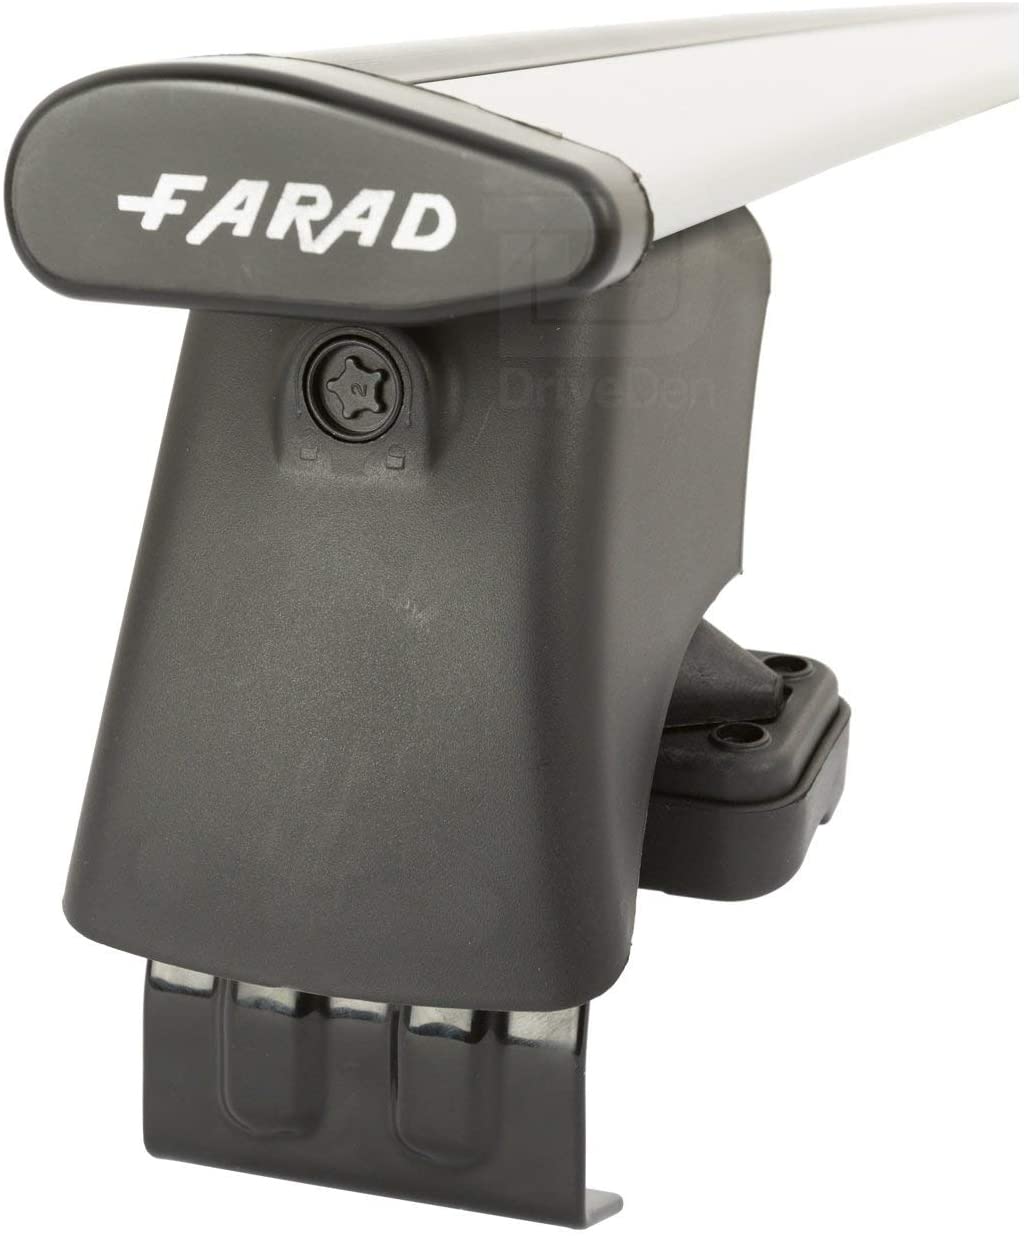 FARAD-Kit H2 per barre portatutto - Ford Mondeo S.W. 2007-2014 (senza corrimano)